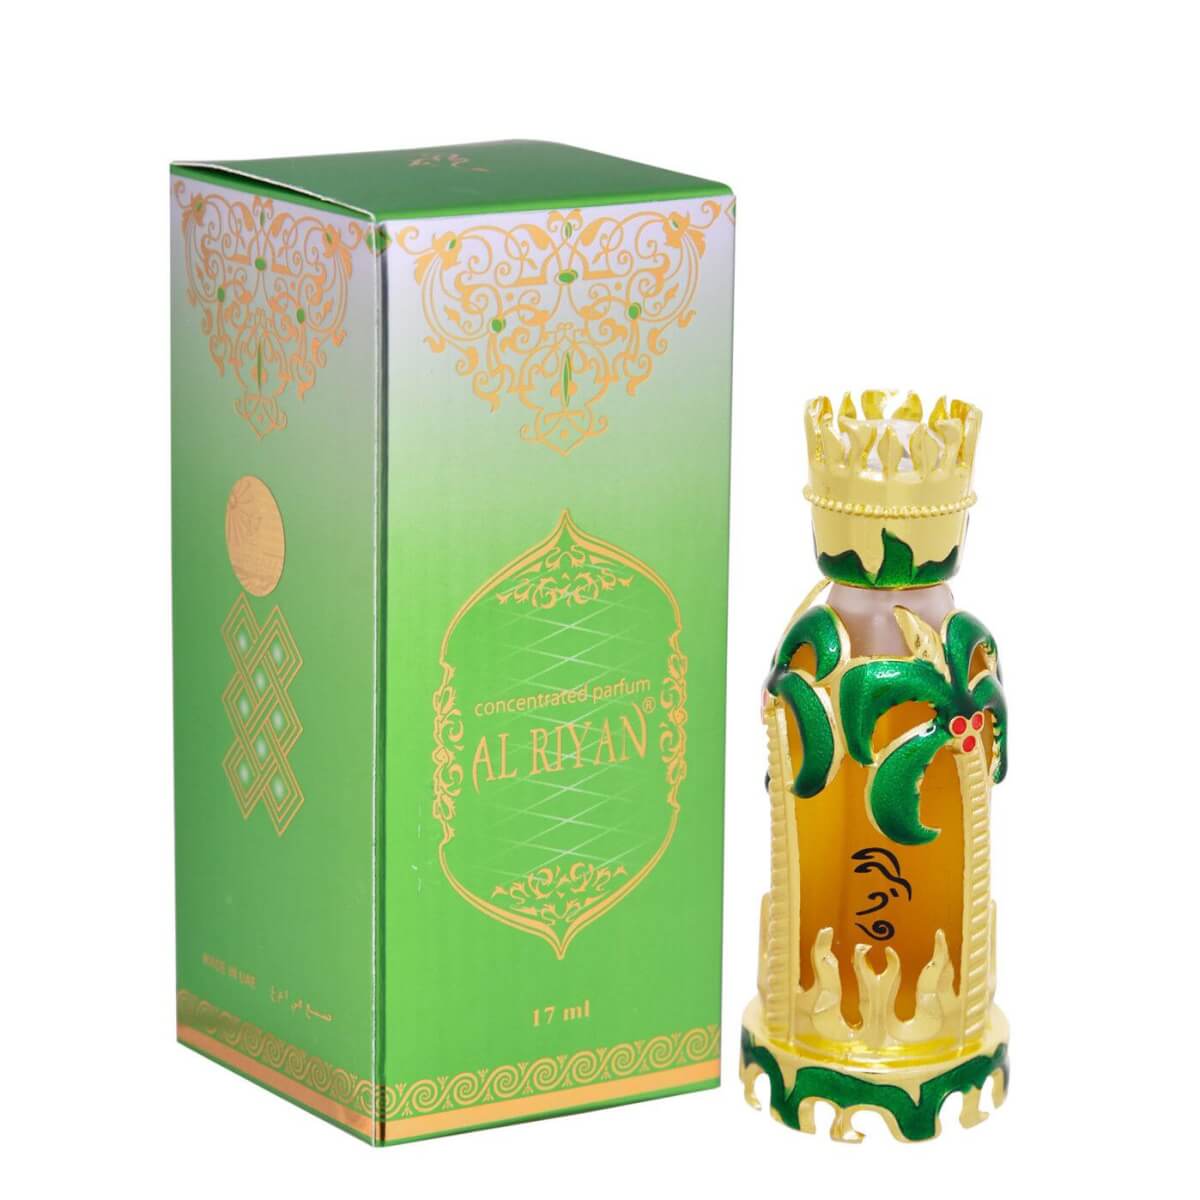 Al Riyan Concentrated Perfume Oil / Attar 17Ml By Khadlaj